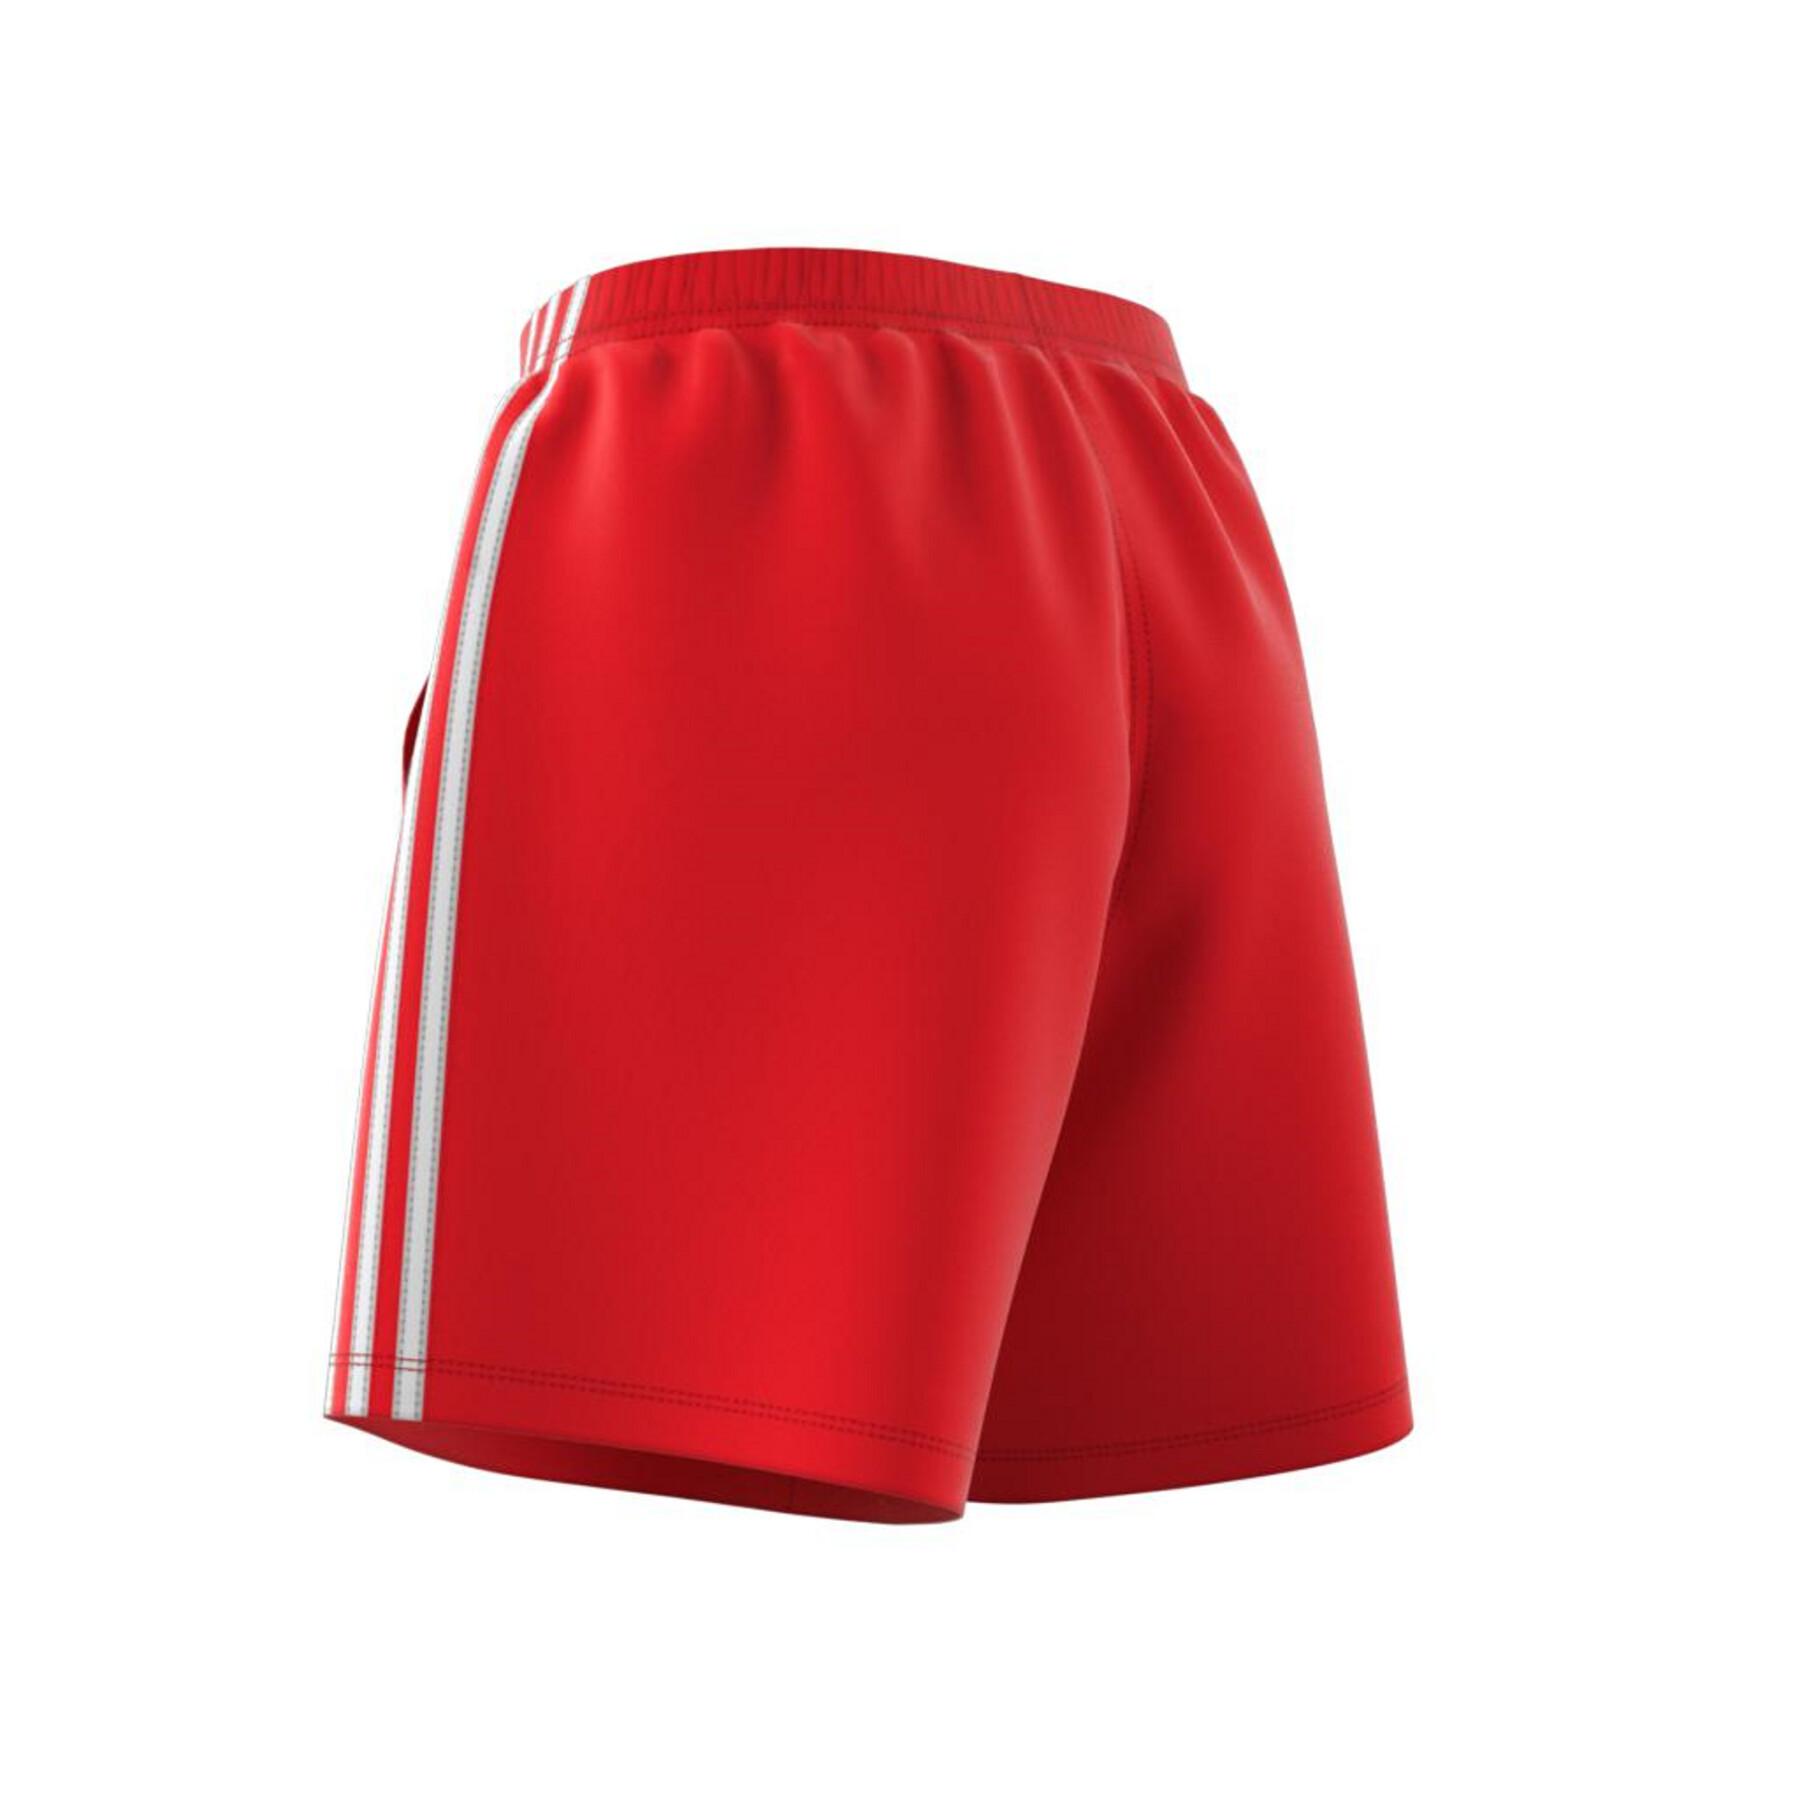 Women's shorts adidas Originals Adicolor Ripstop